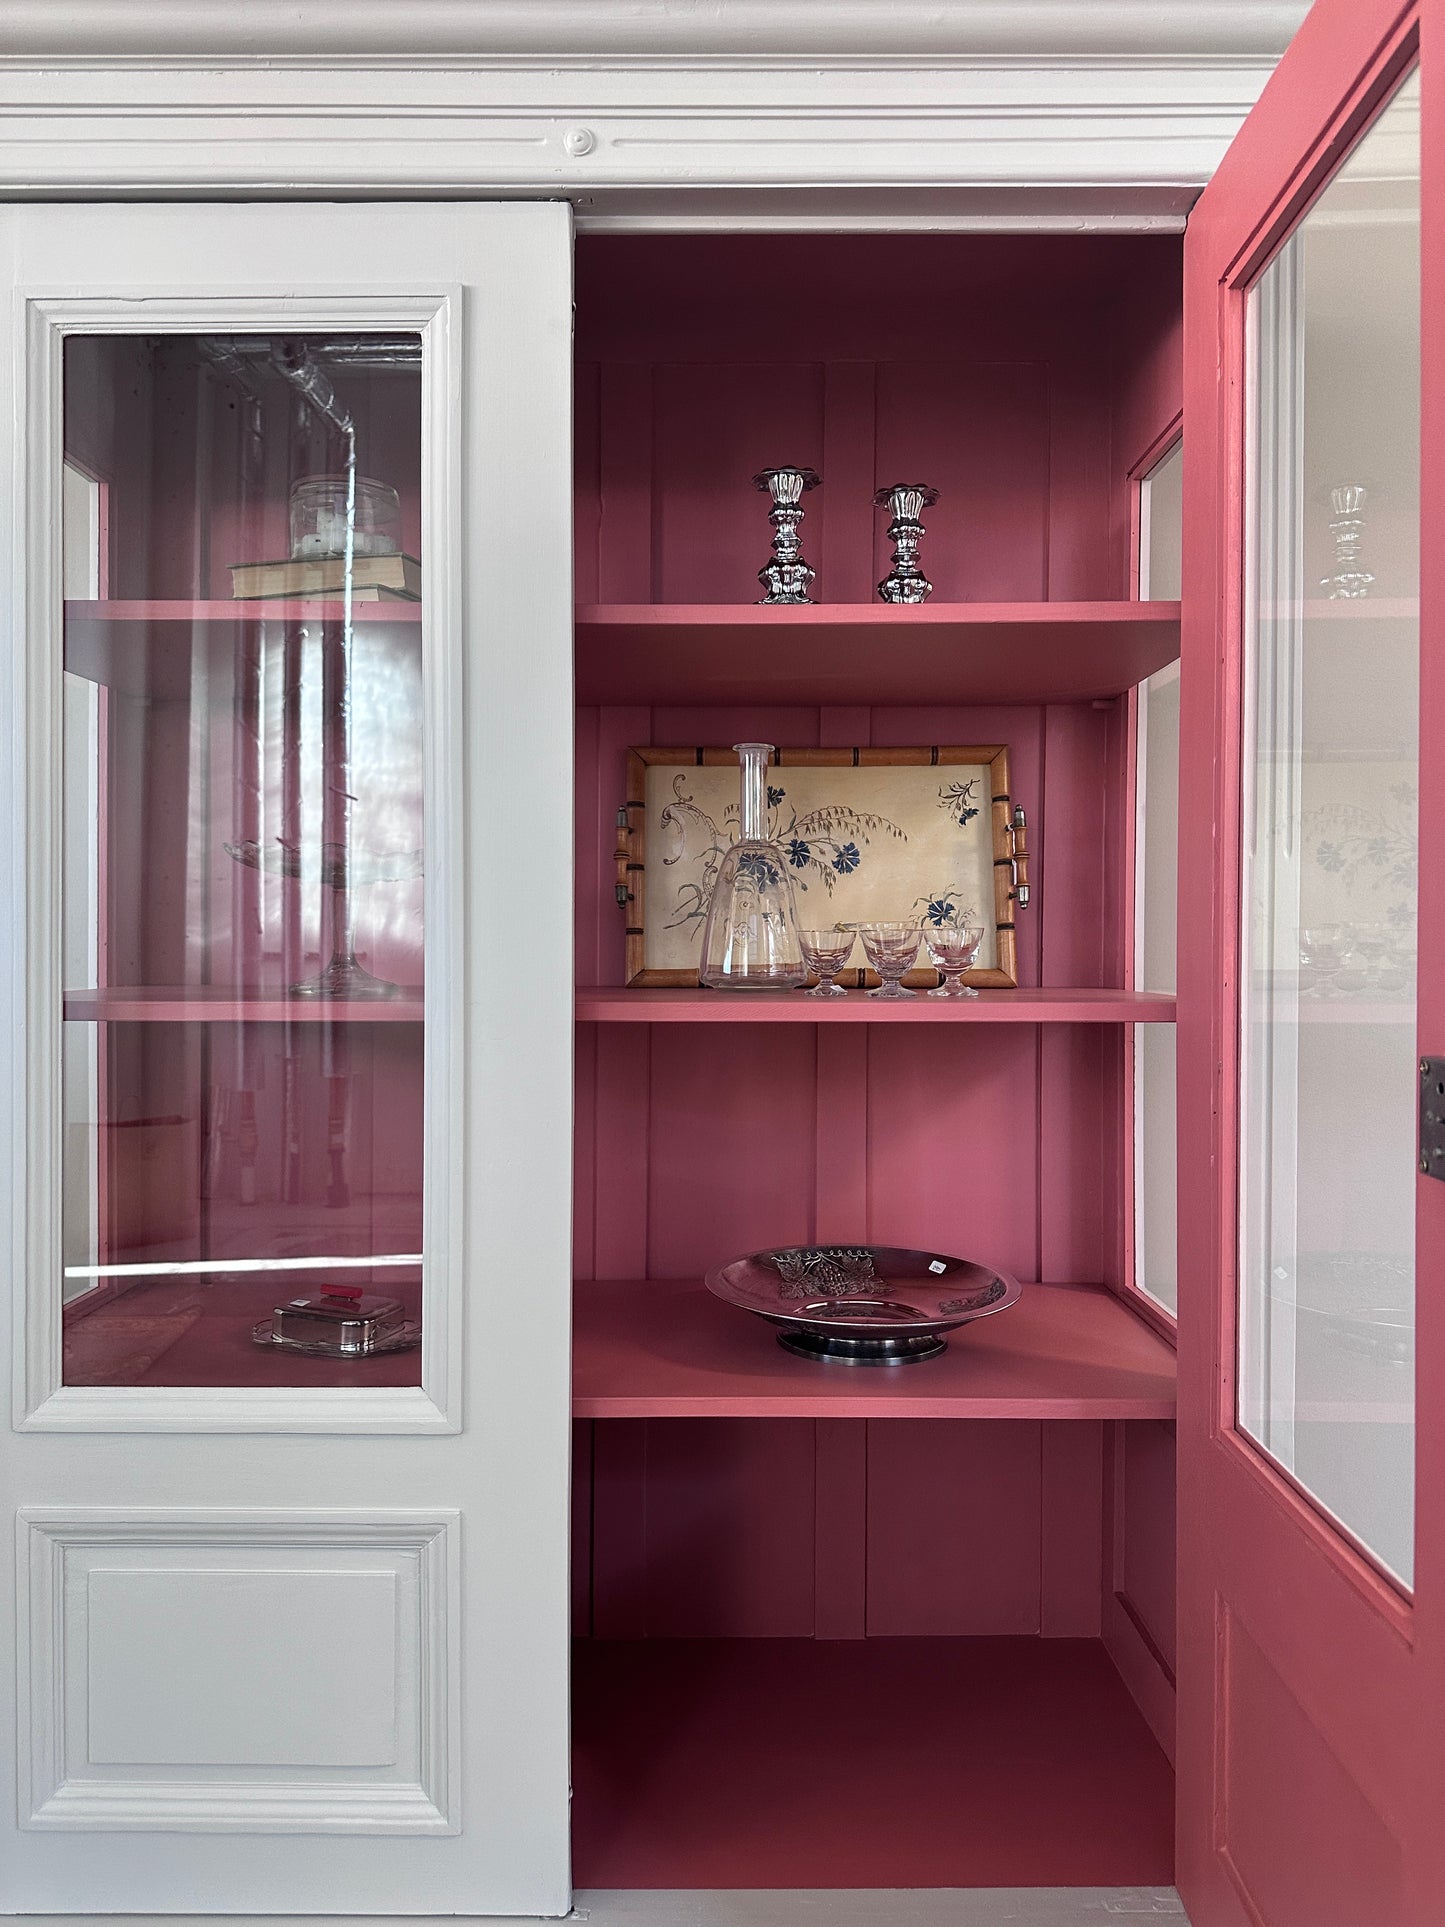 Bild visar ljust vitrinskåp med två dörrar, varav den ena är öppen. Insidan på skåpet är rosa